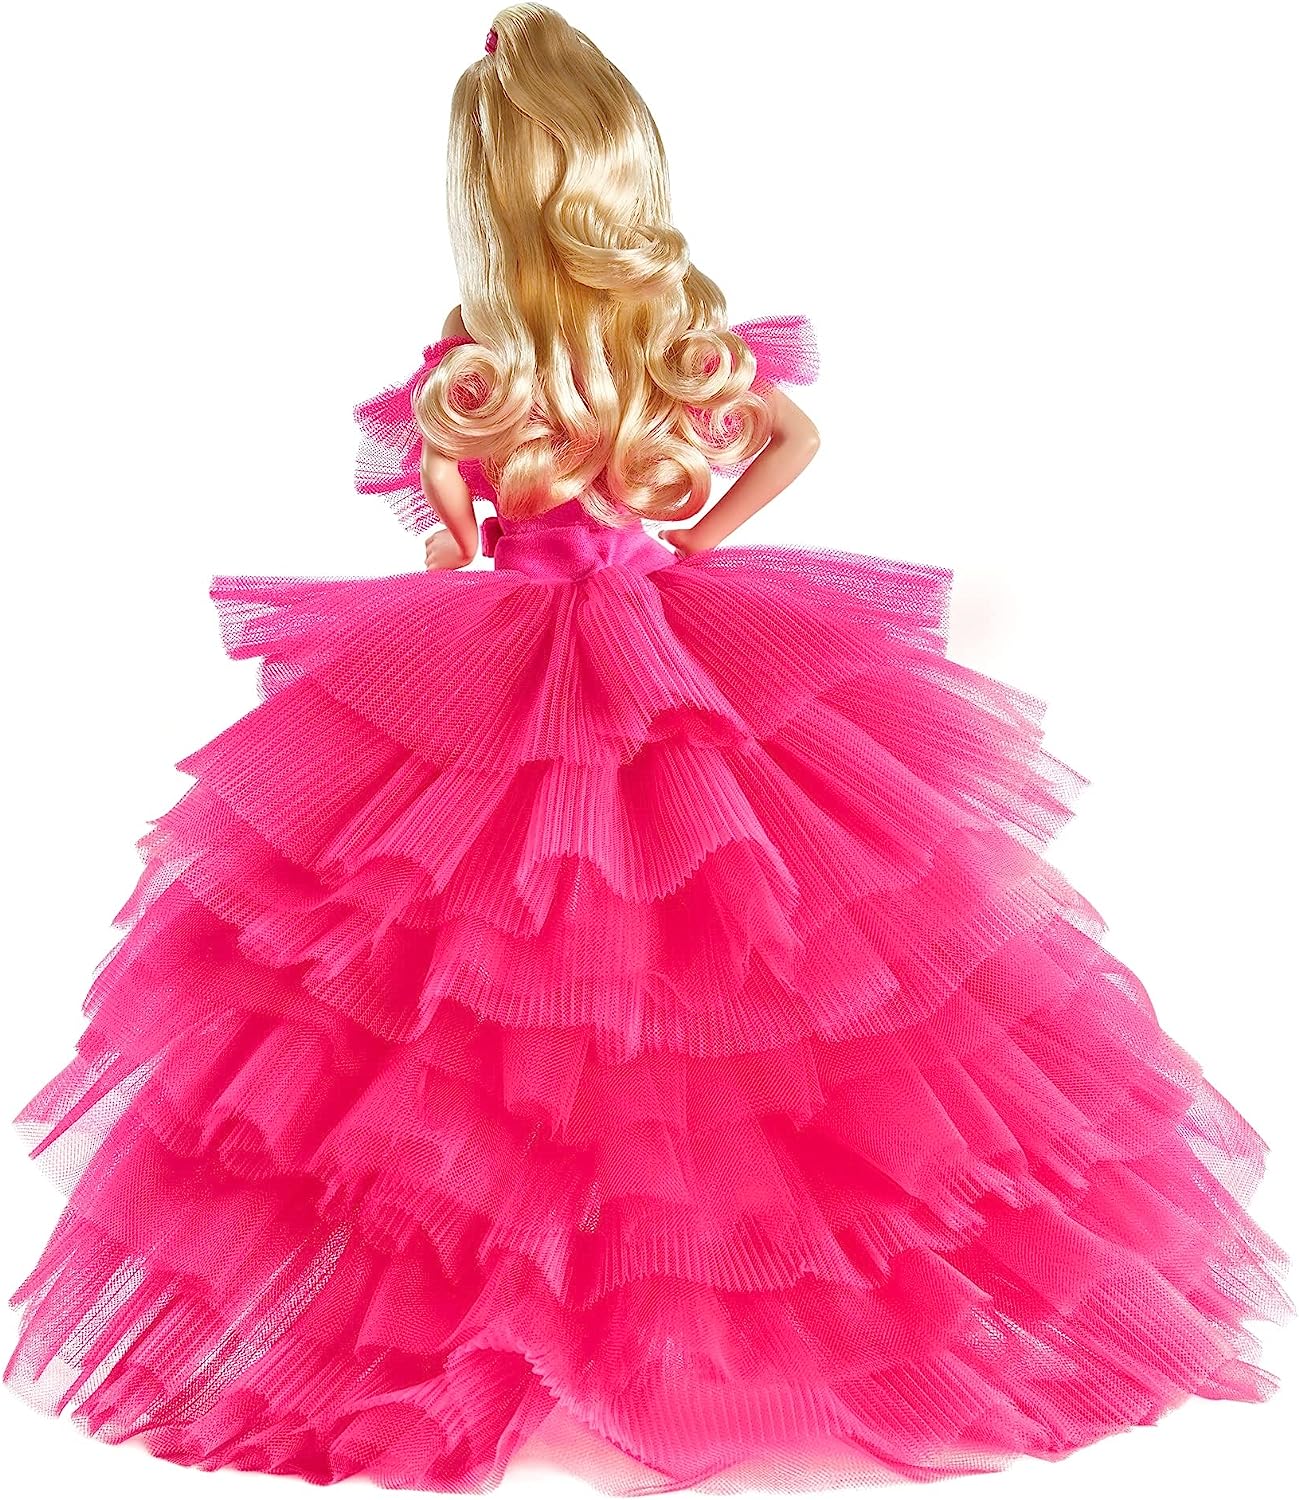 楽天市場 送料無料 バービー Barbie ピンクコレクションドール ピンクプレミア ゴールドラベル Gtj76 シルクストーン コレクター プレゼント Angelica